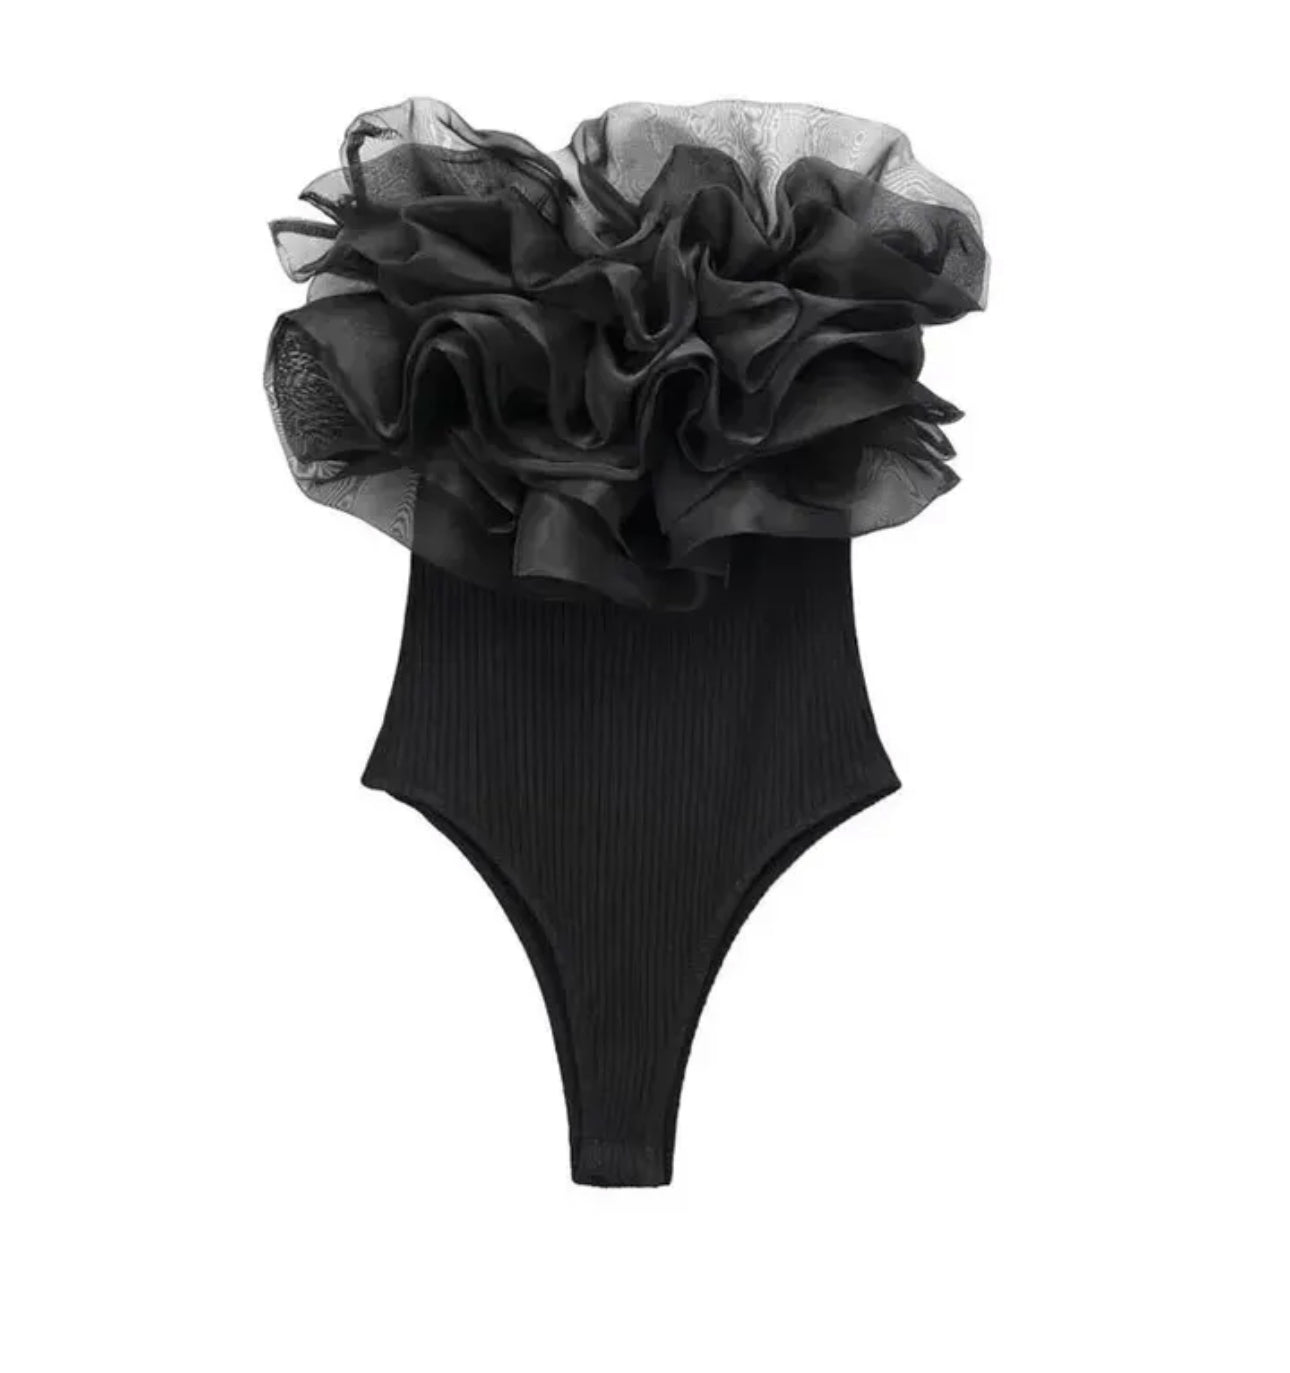 Black Frill Bodysuit